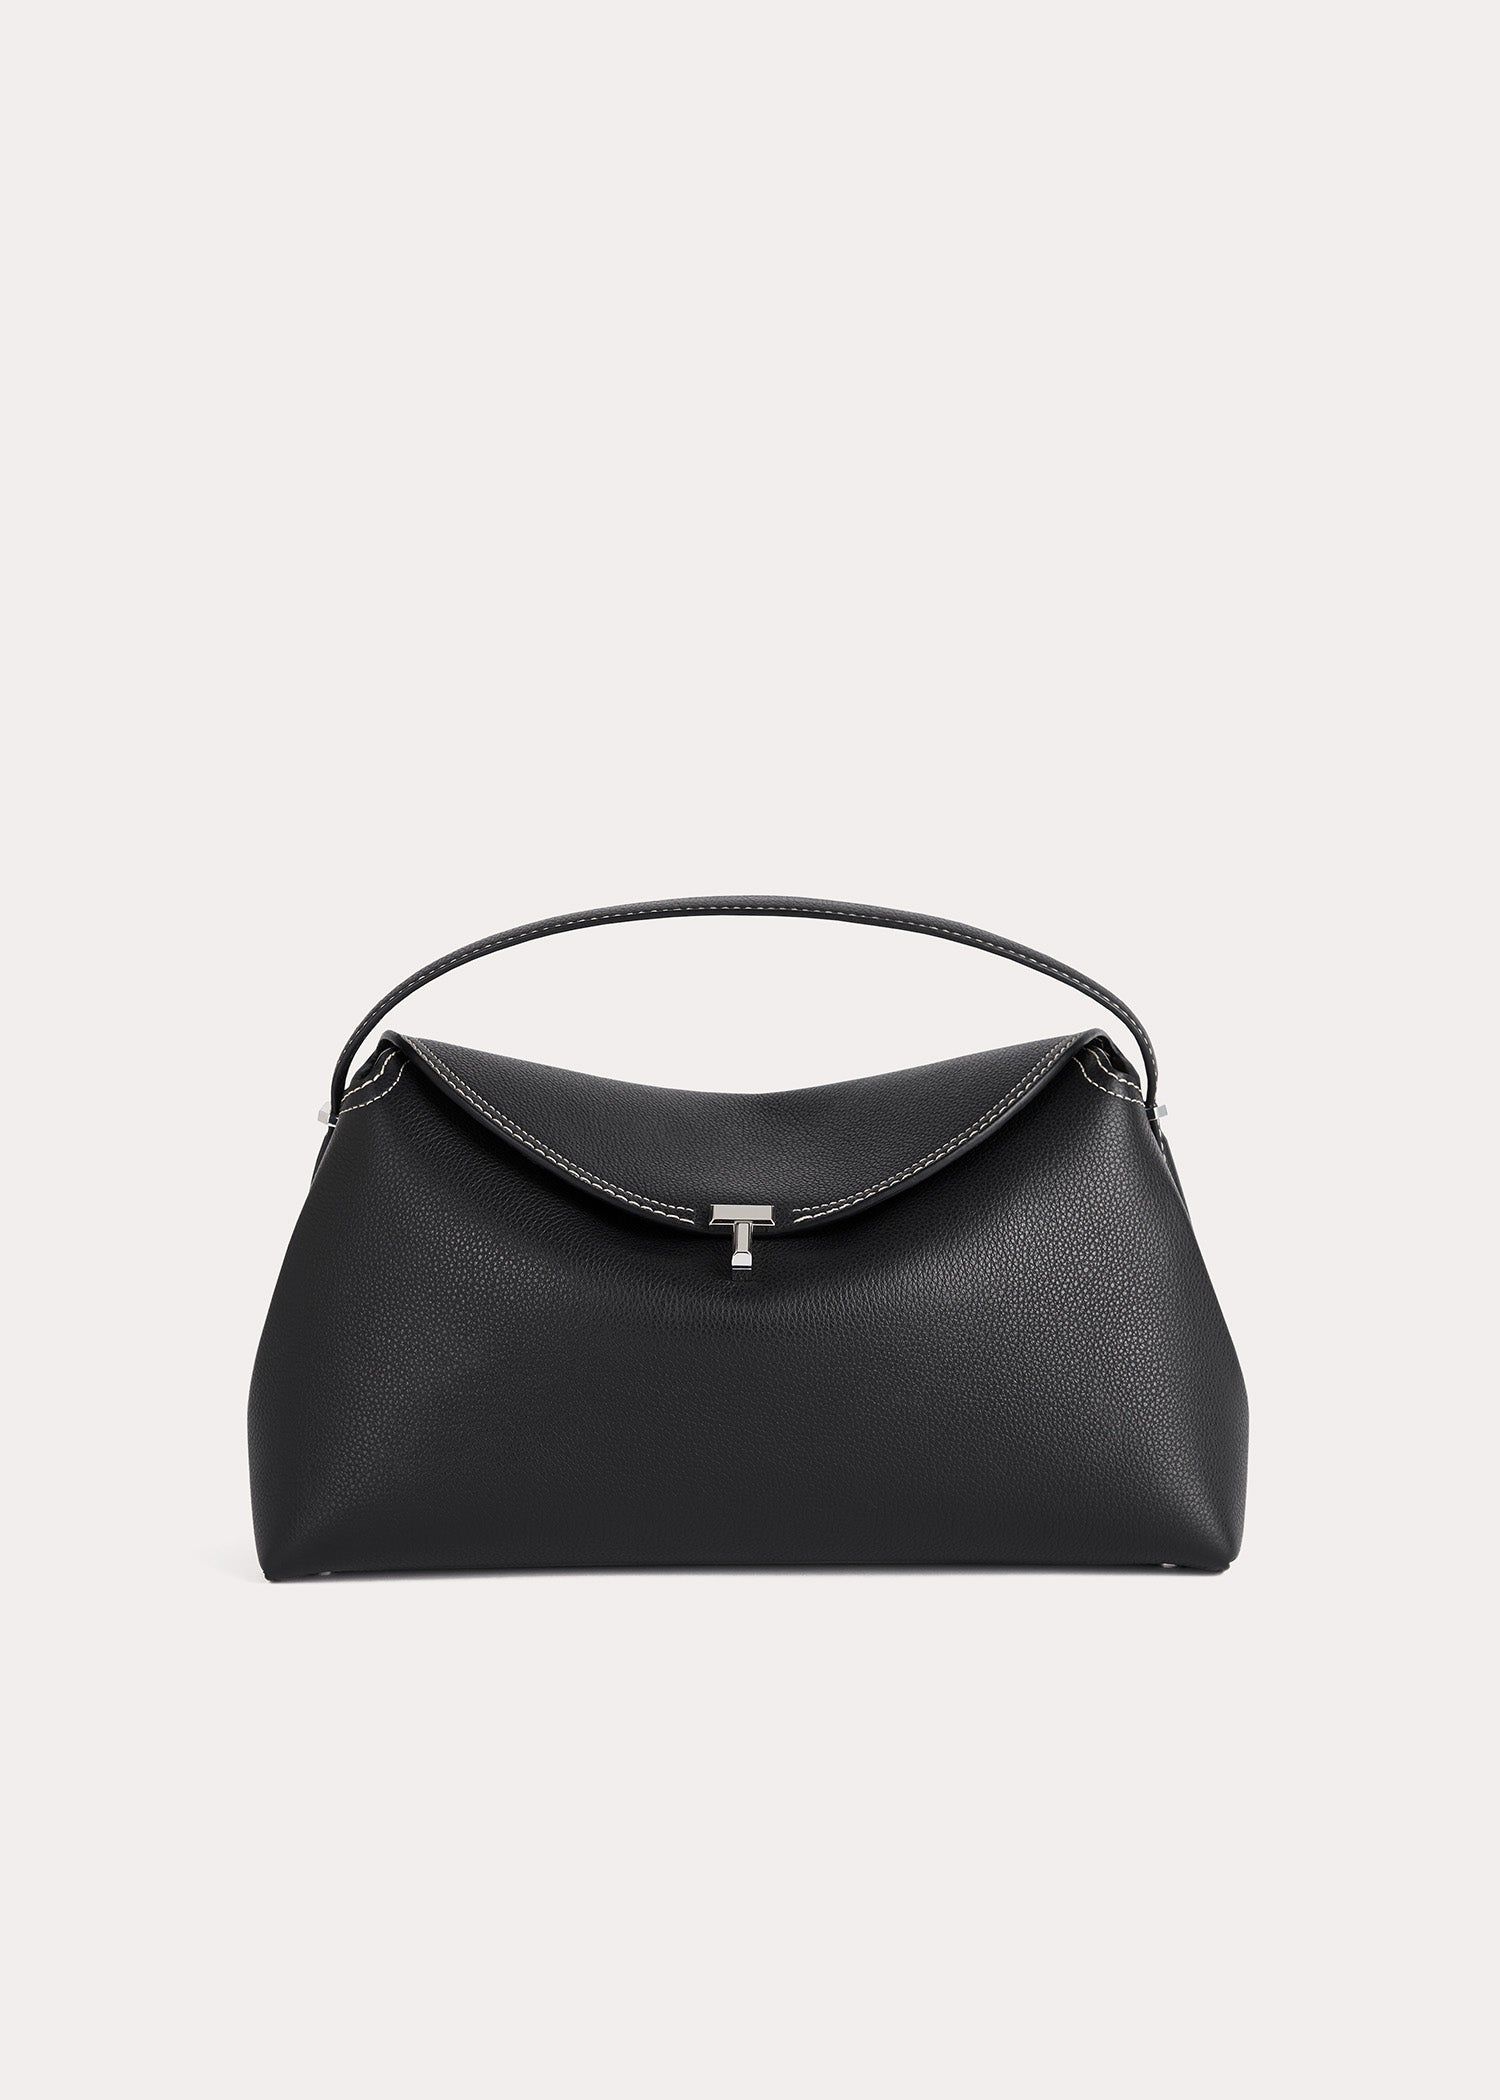 Longchamp Roseau Vintage Black Leather Toggle shoulder Bag Purse | eBay